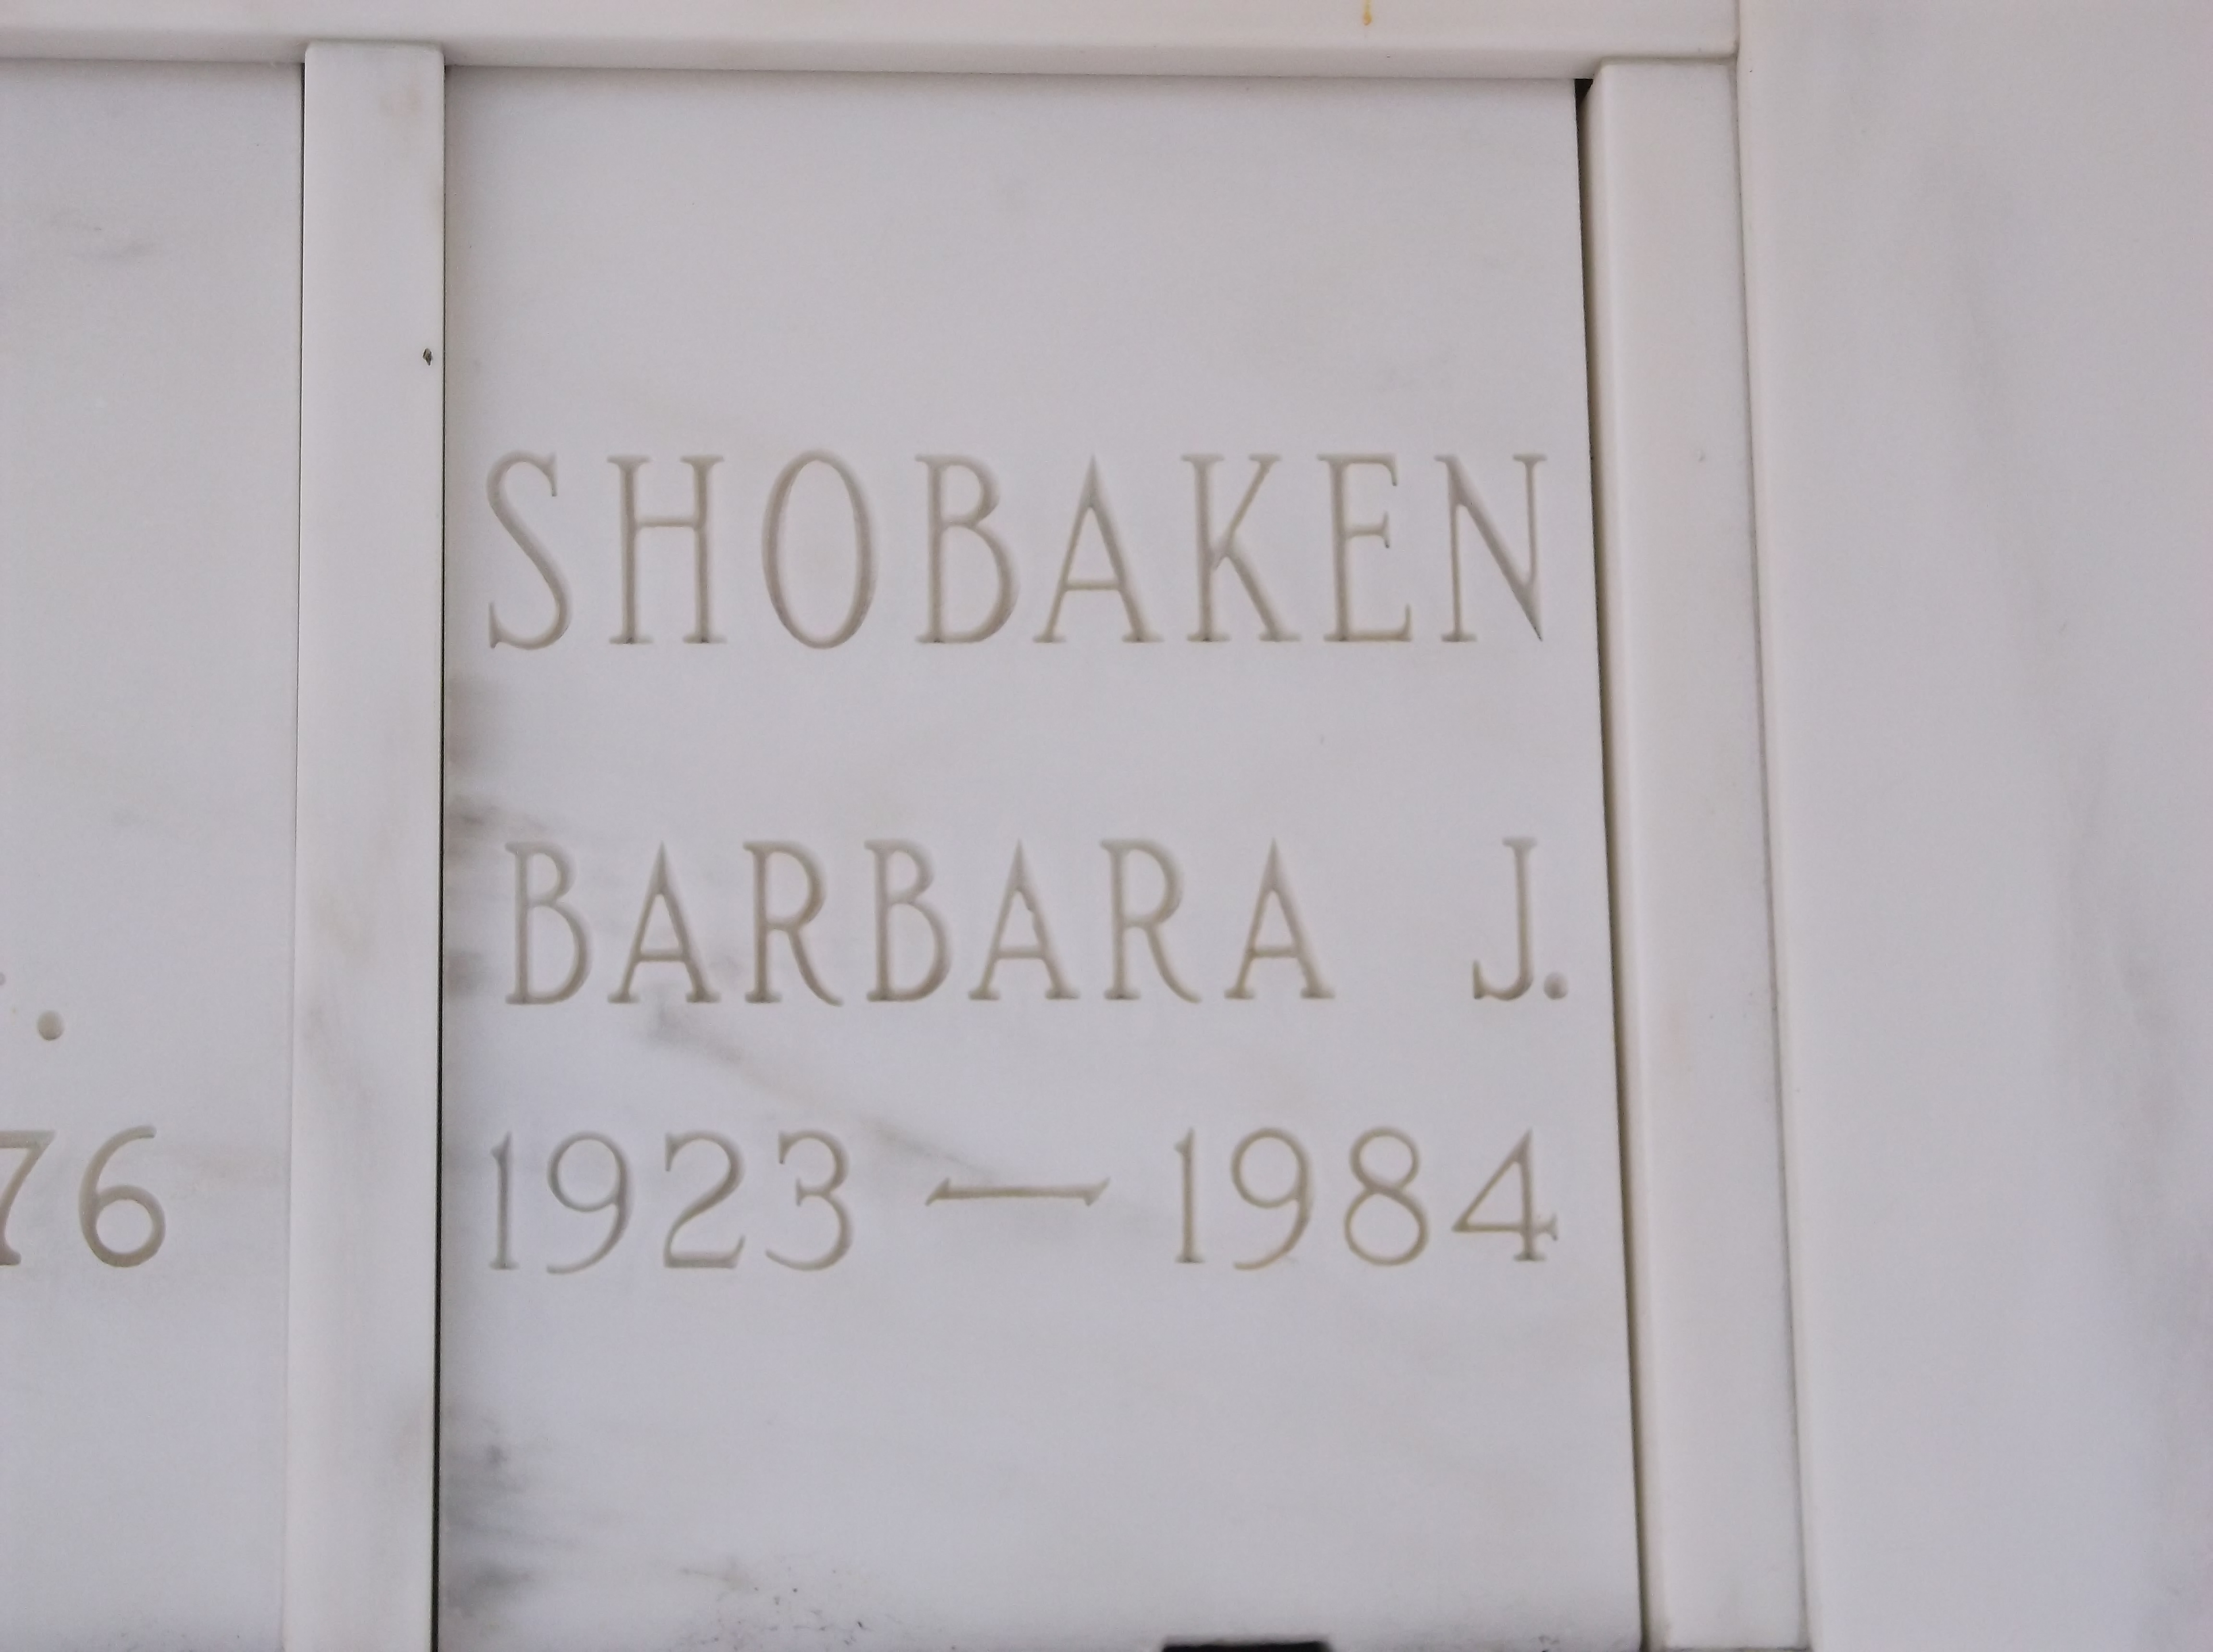 Barbara J Shobaken